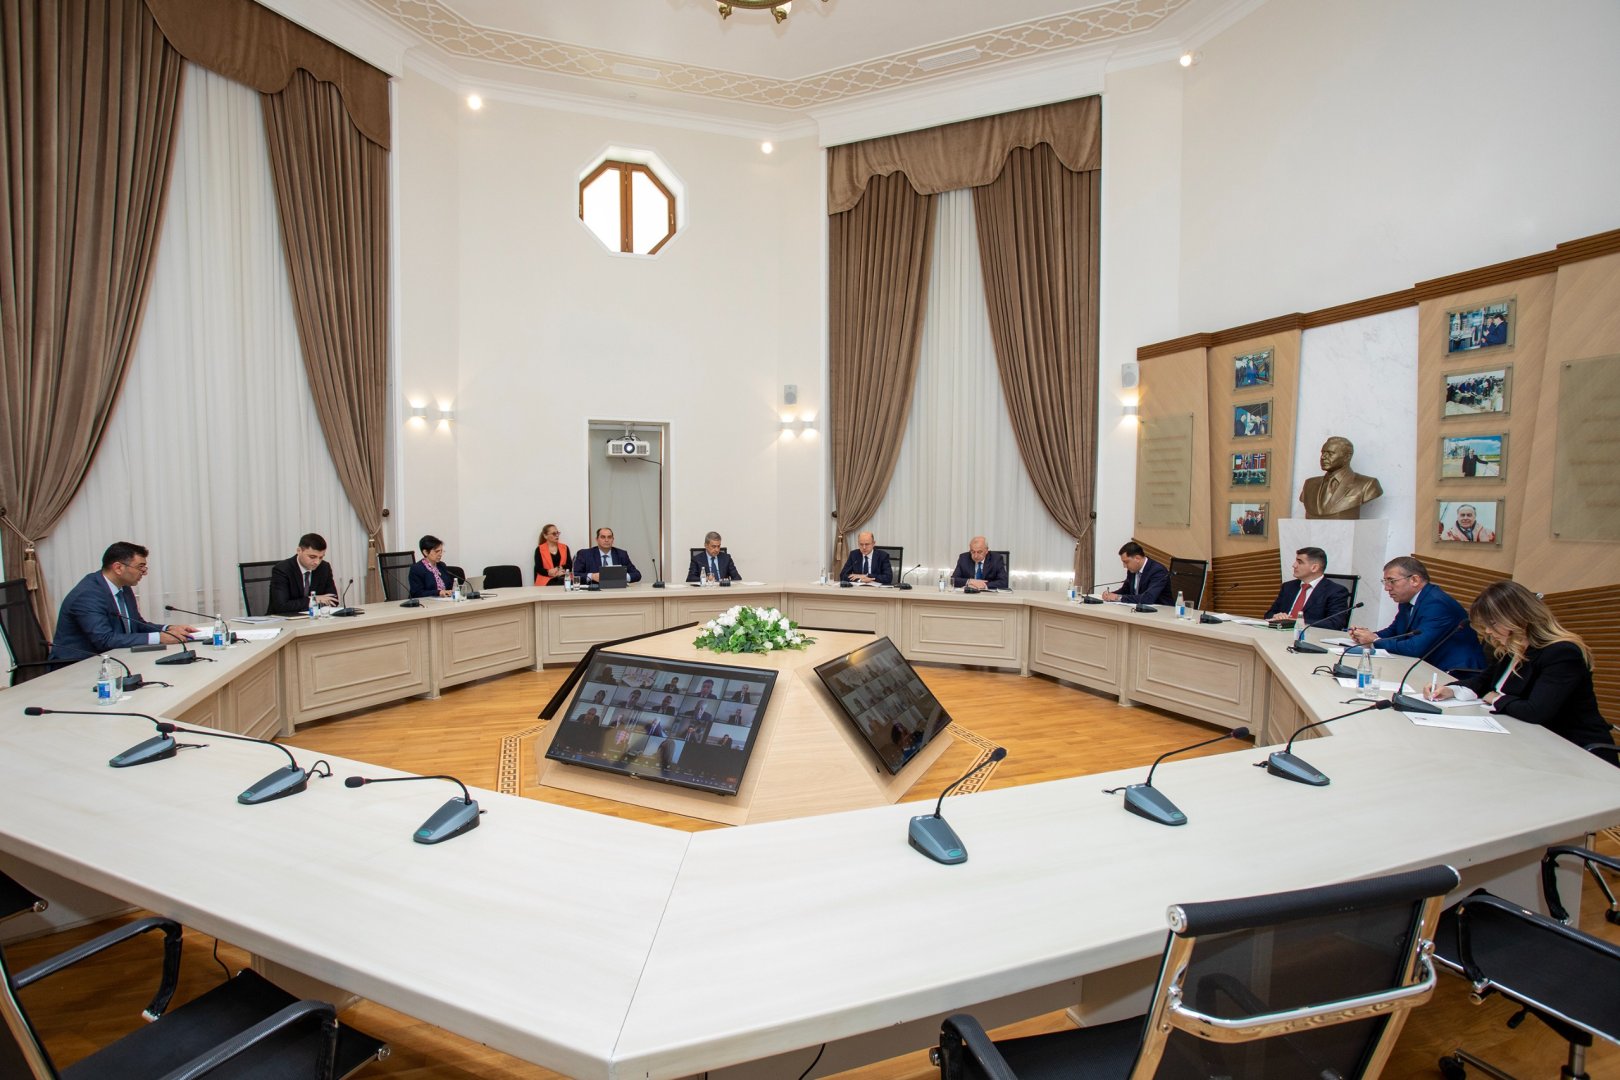 Методология составления энергетического баланса обсуждена на коллегии минэнерго Азербайджана